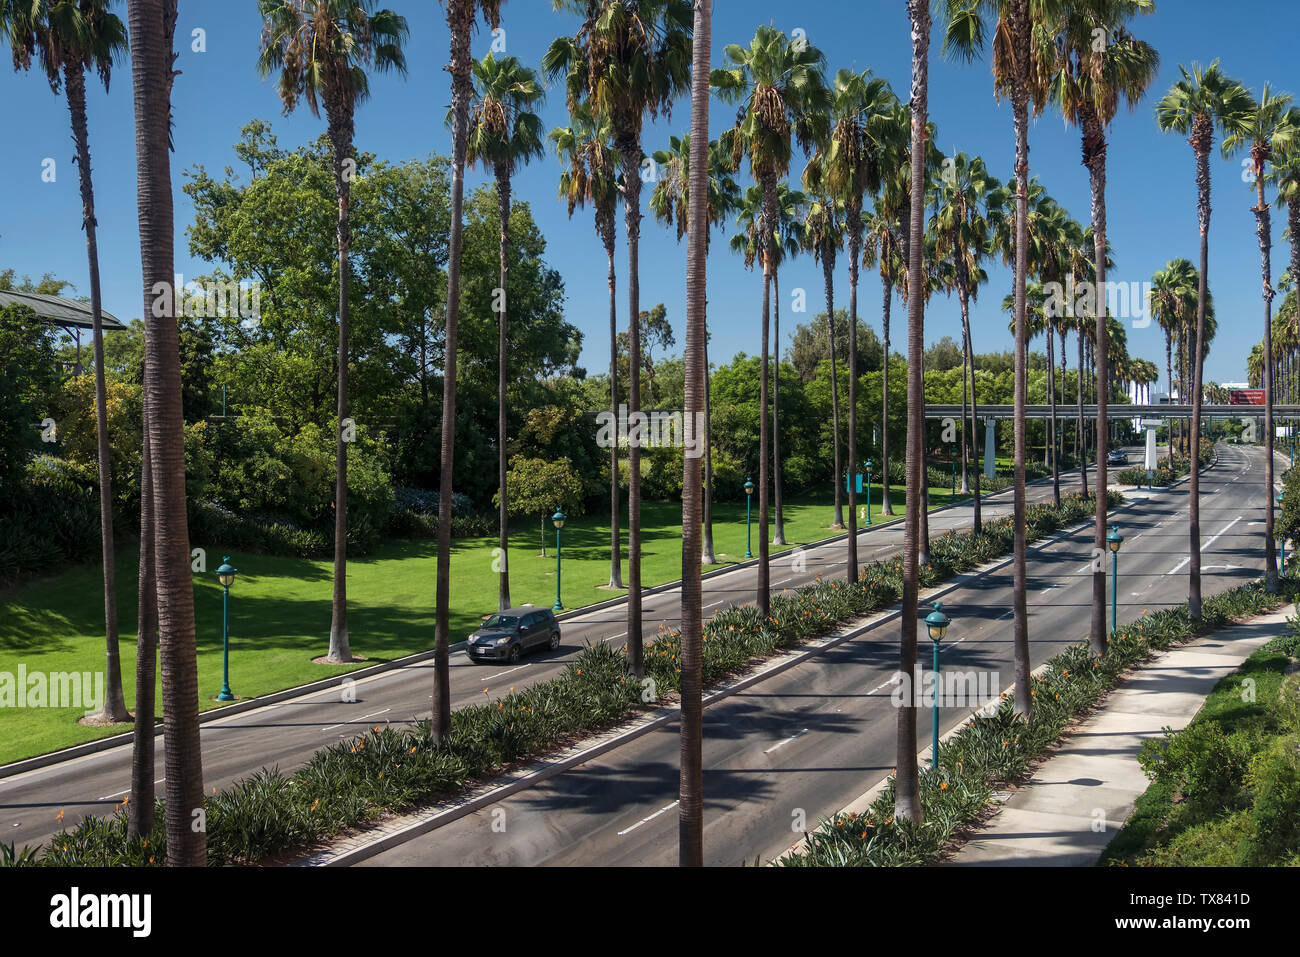 La route bordée de palmiers typiques, Anaheim, Los Angeles, Californie, USA Banque D'Images